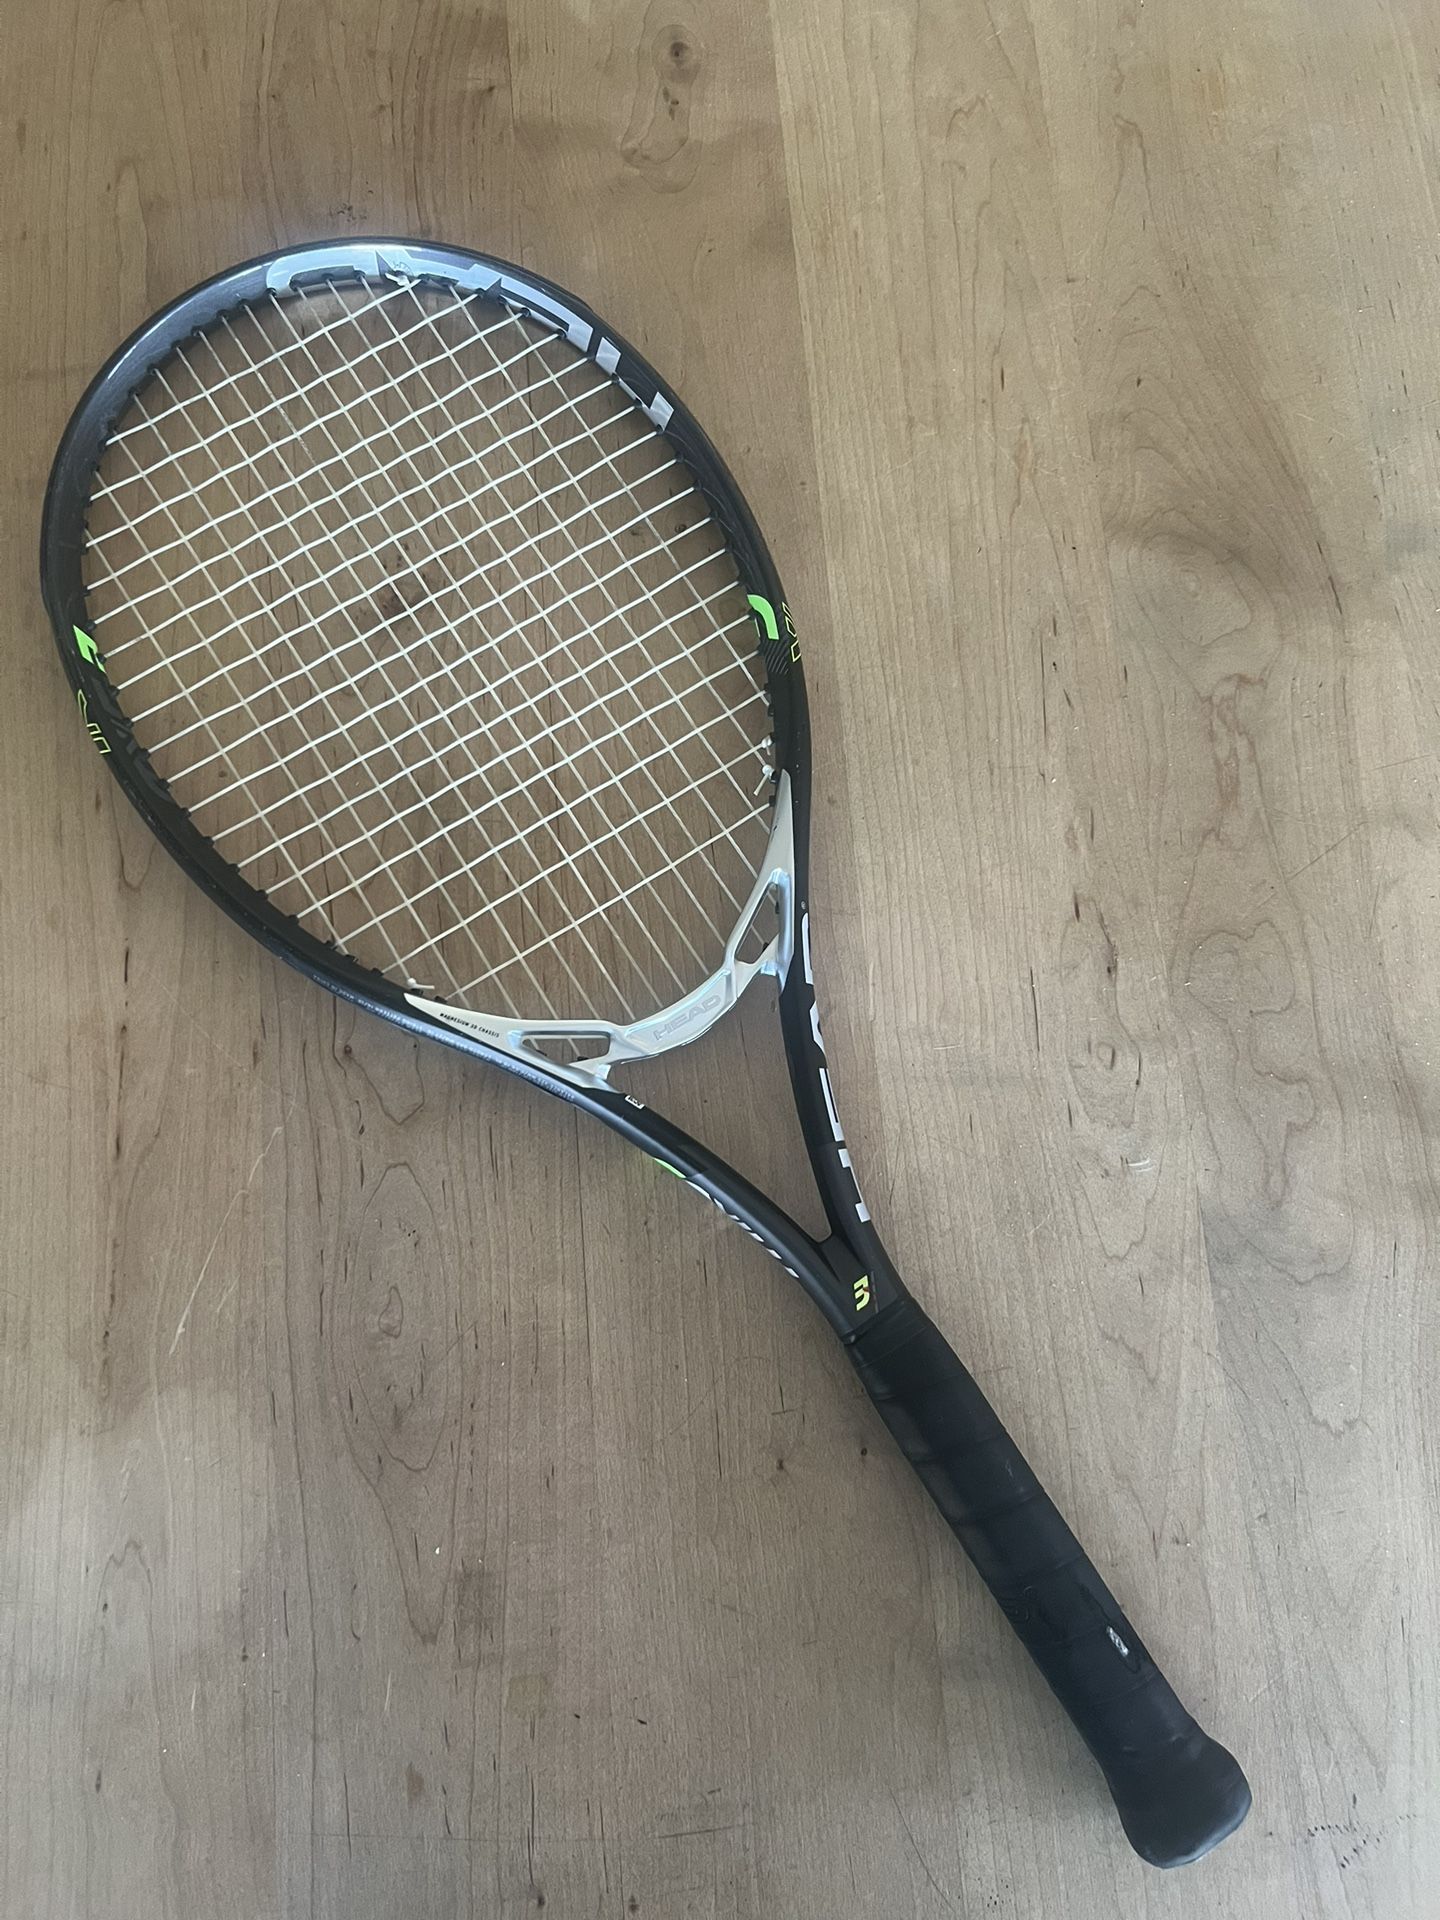 Head MXG3 Tennis Racket Racquet Very High End!